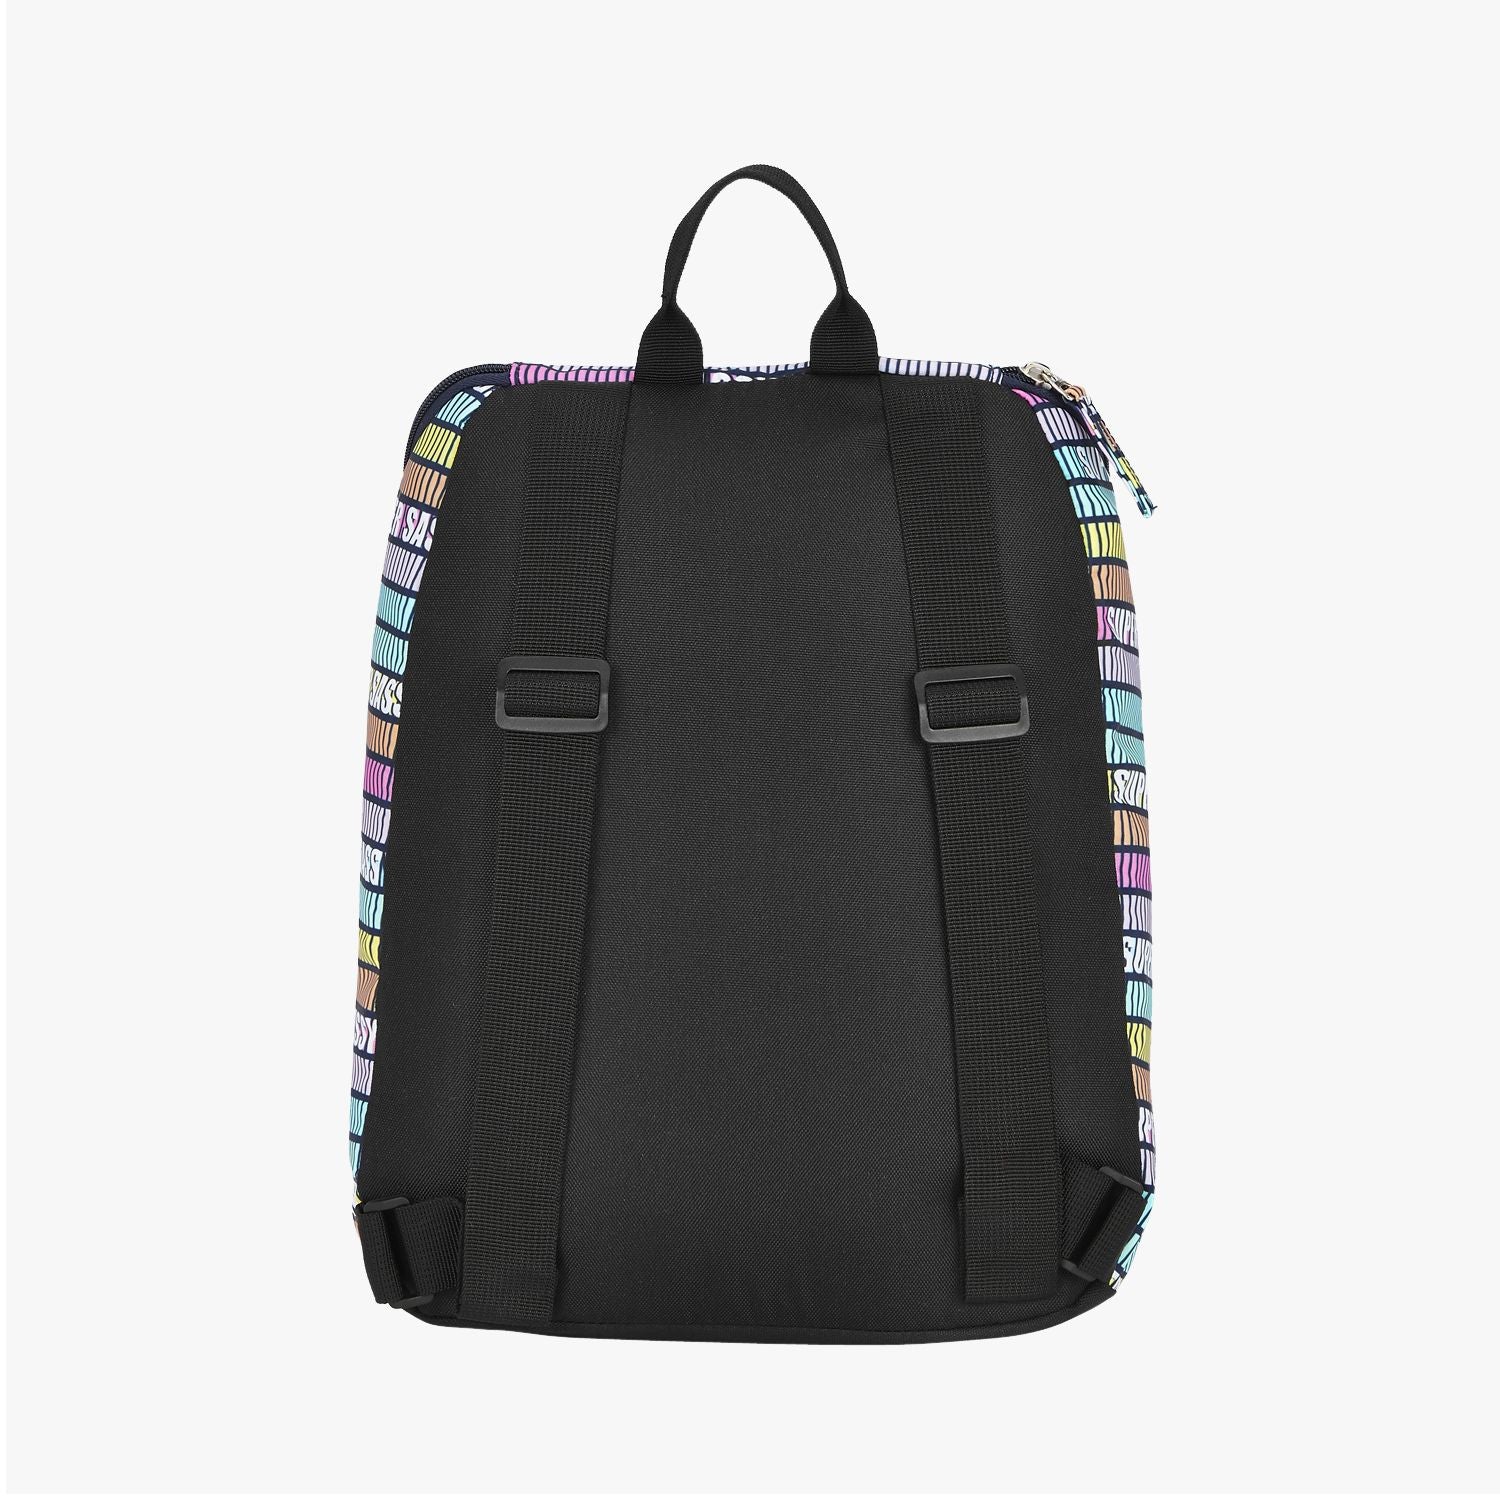 Super Sassy Small Daypack - Multicolor